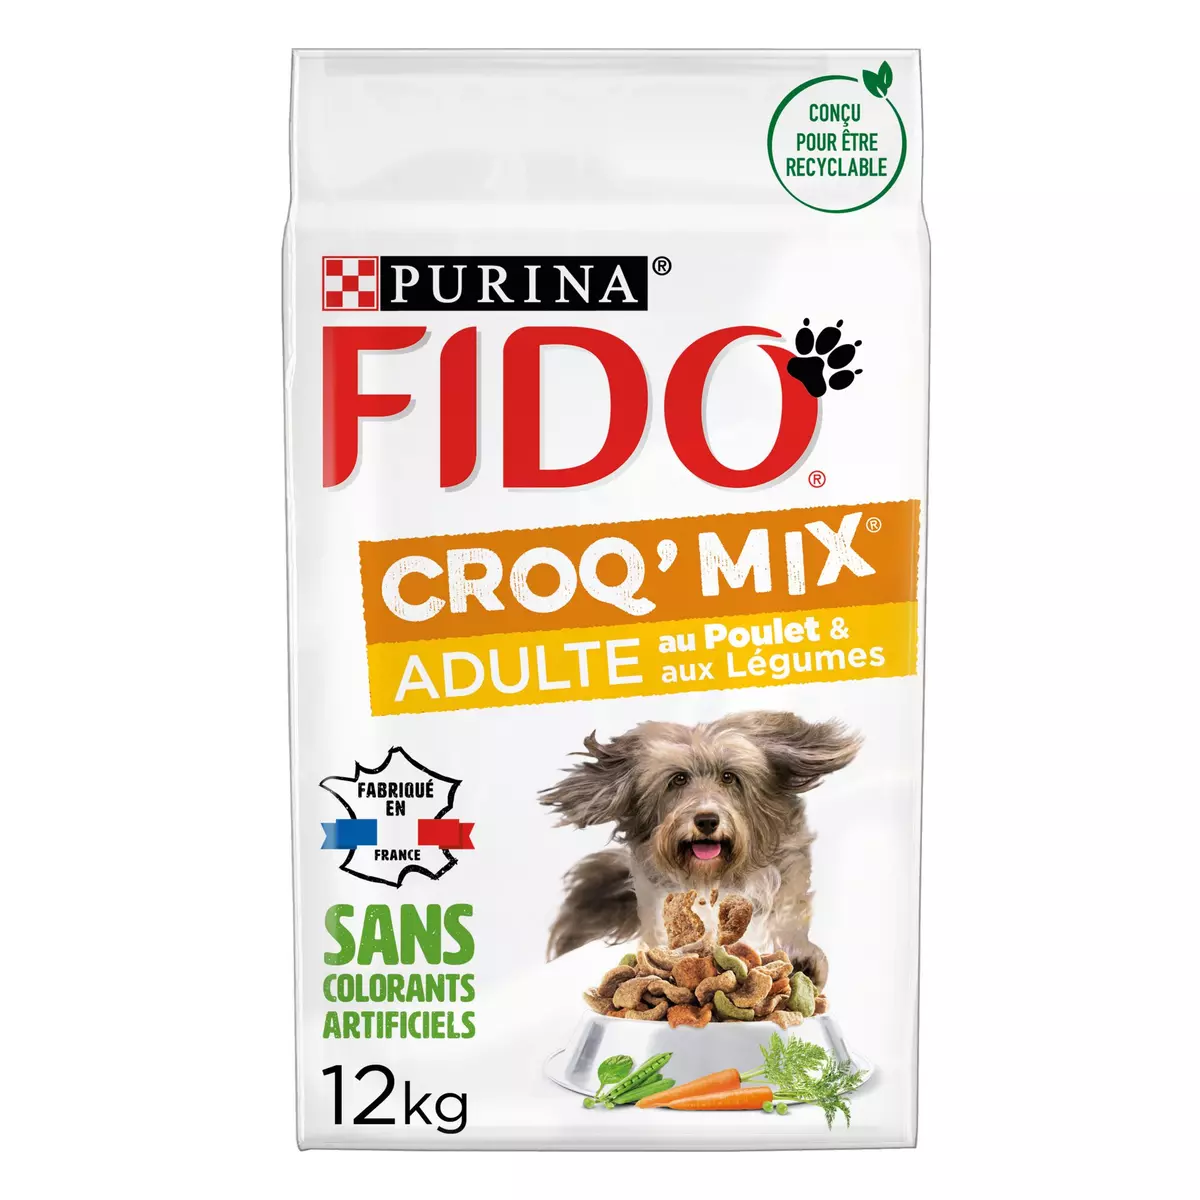 FIDO croq'mix croquettes au poulet et légumes pour chien adulte 12kg